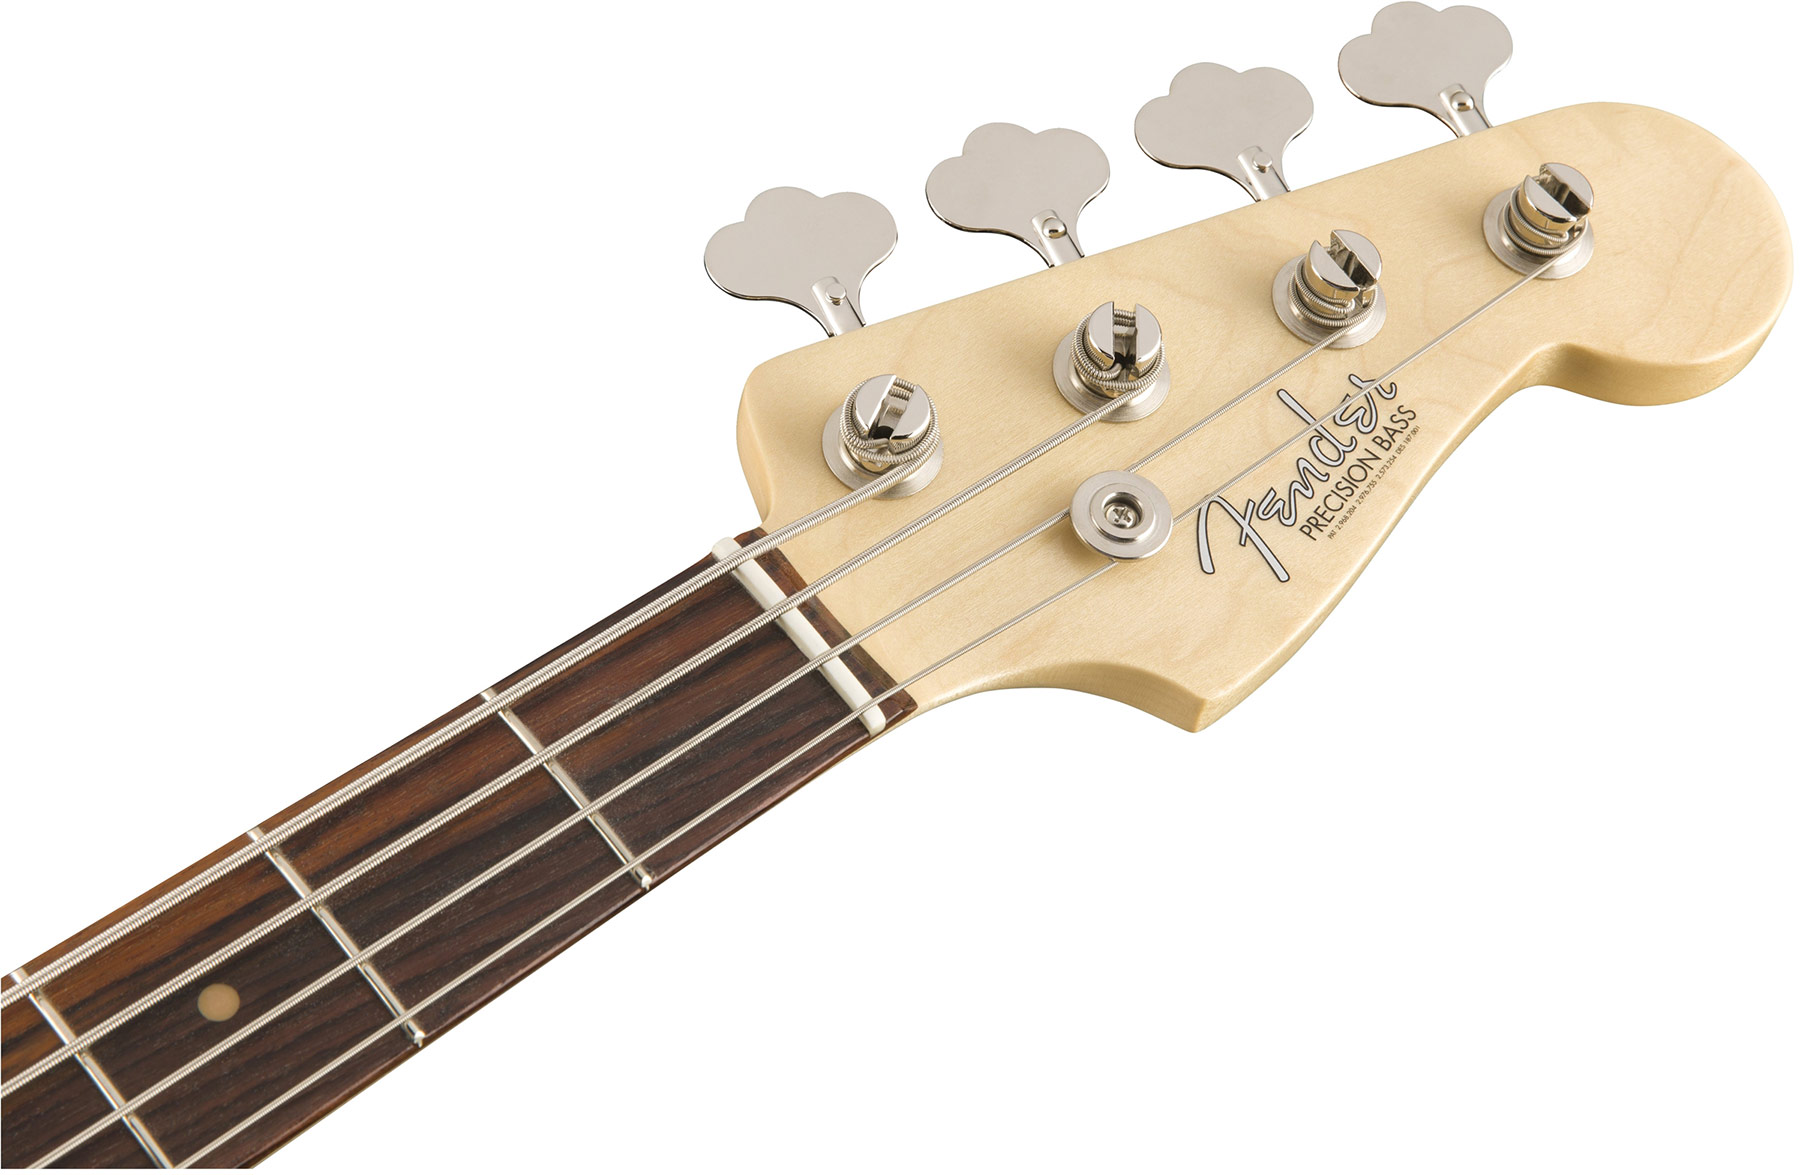 Fender Precision Bass '60s American Original Usa Rw - 3-color Sunburst - Basse Électrique Solid Body - Variation 1